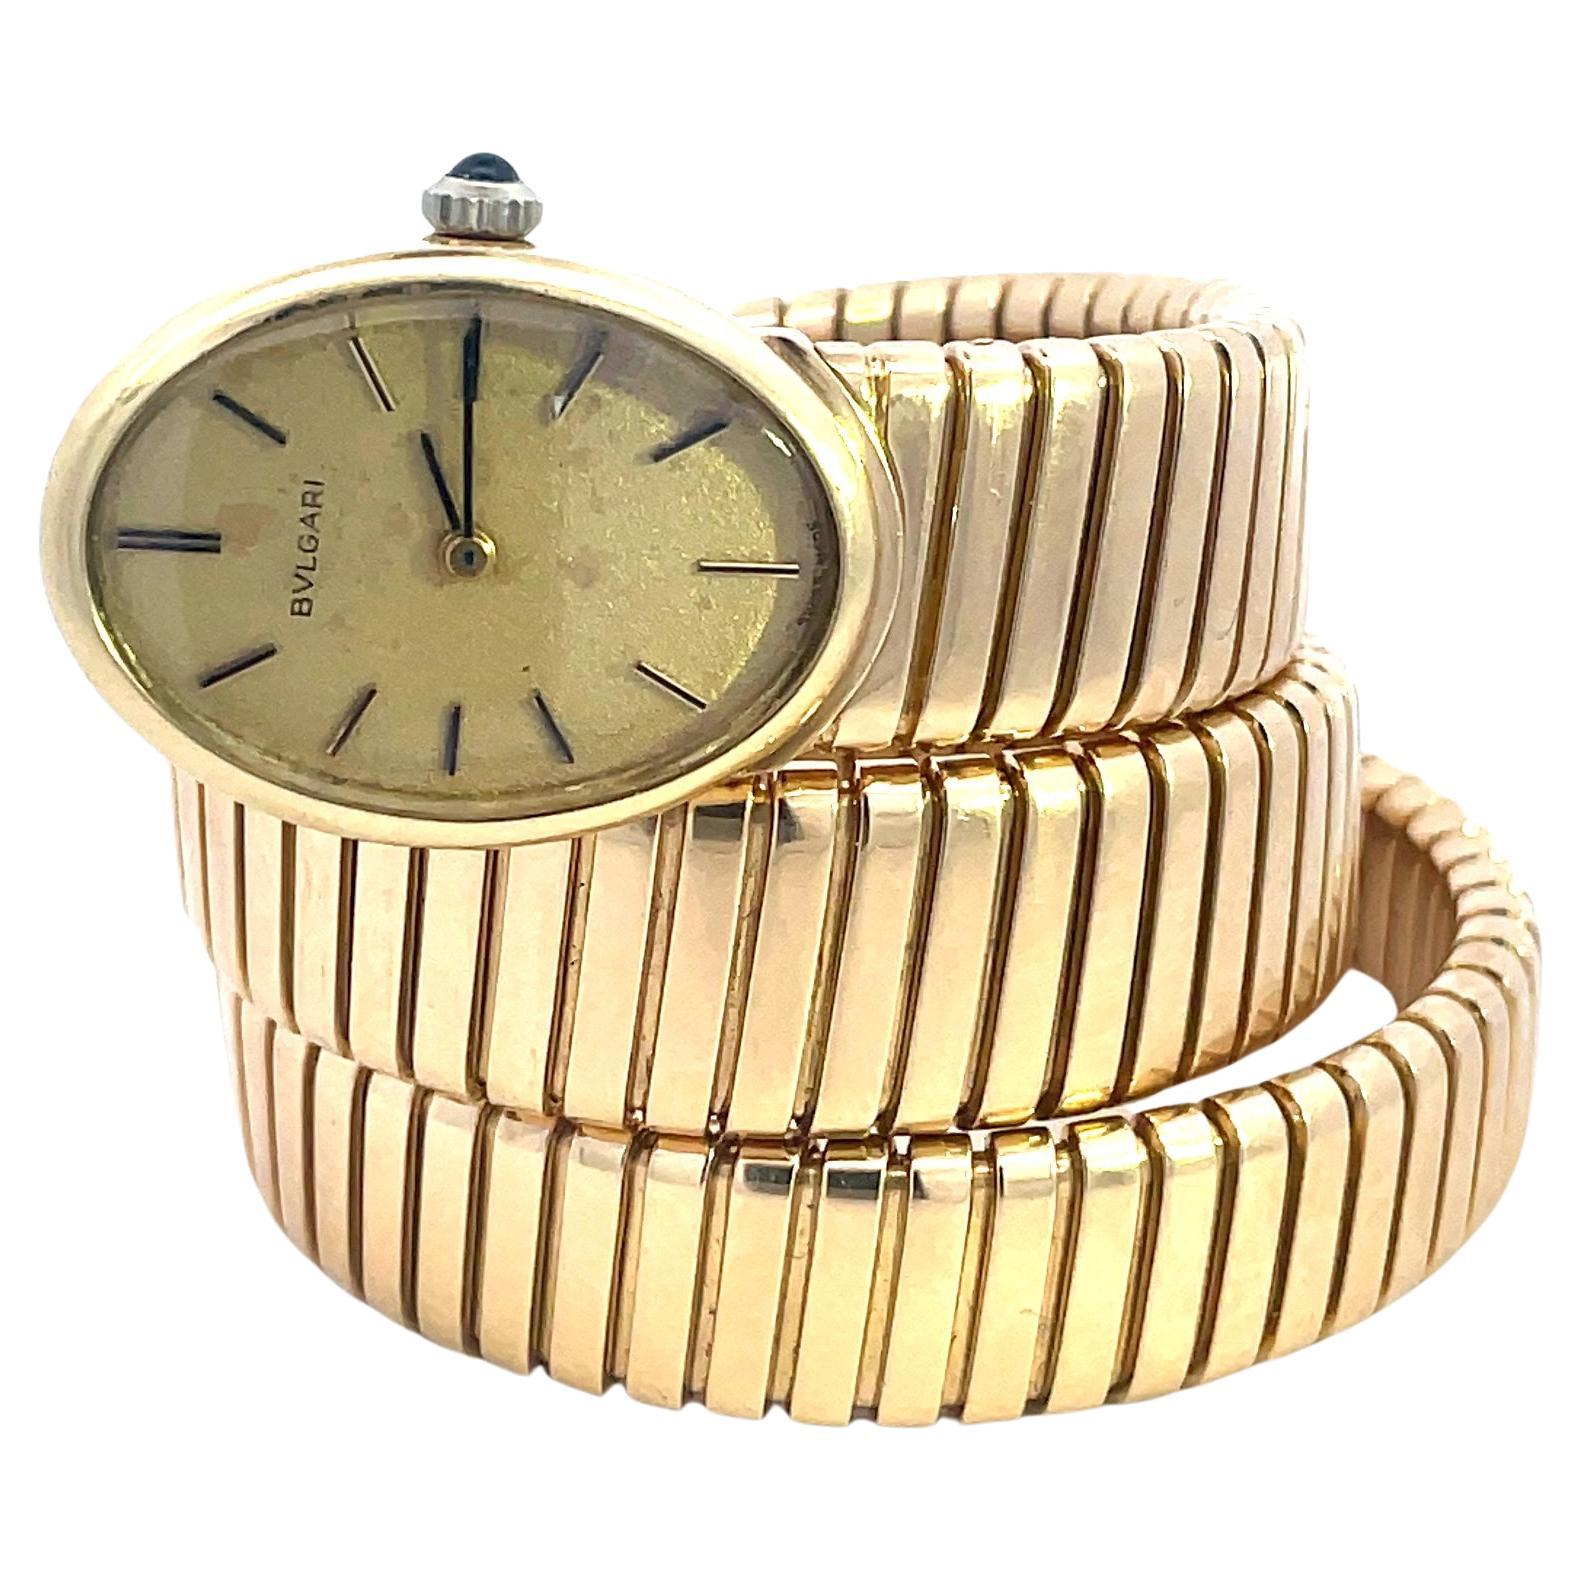 Eine seltene, atemberaubende Vintage Bulgari Tubogas Uhr, aus 18k Gelbgold, ca. 1965.
Die goldene Uhr hat ein ovales Gehäuse und ein mattes Champagner-Zifferblatt. Das Zifferblatt ist mit Goldzeigern ausgestattet.
Die Juvenia Handaufzug ist mit